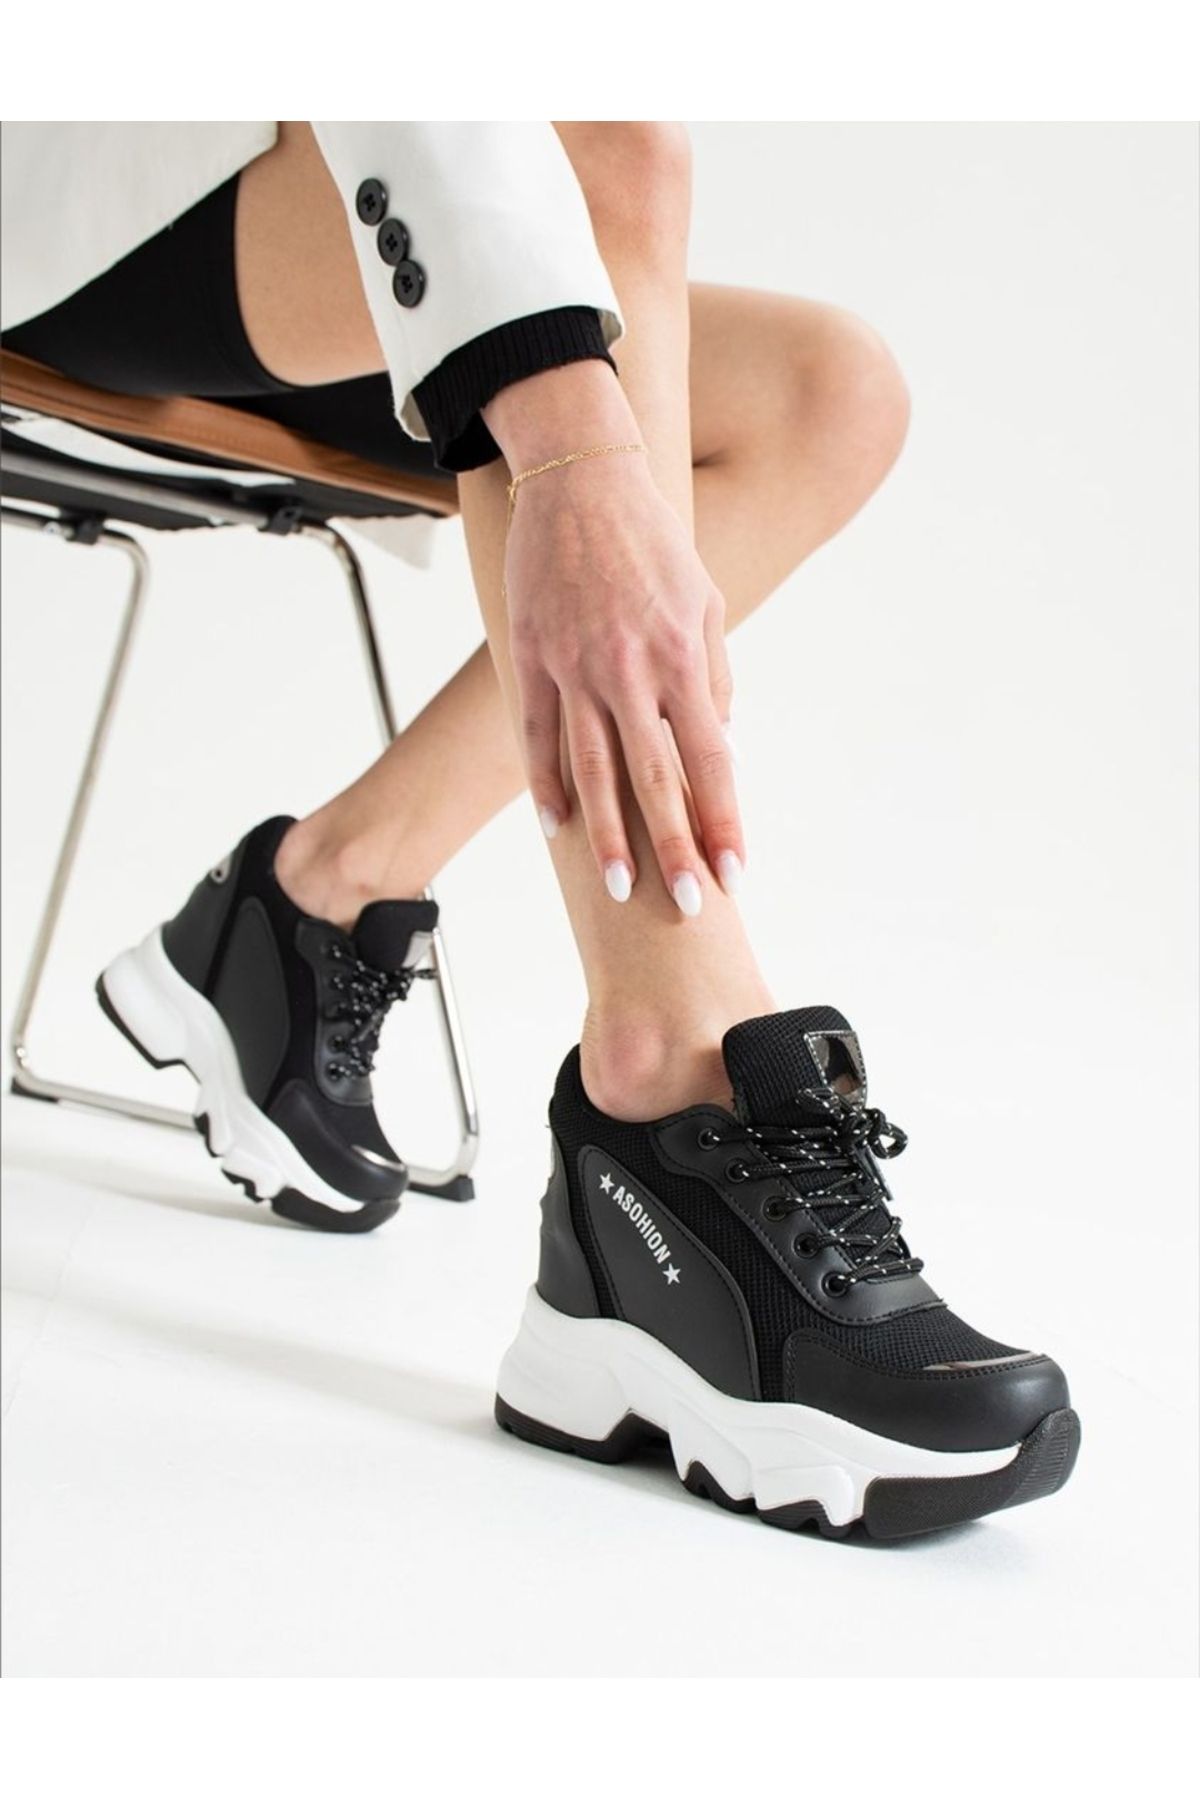 Afilli Kadın Siyah Beyaz Gizli Yüksek Taban Dolgu Platform Topuk Günlük Gümüş Sneaker Spor Ayakkabı